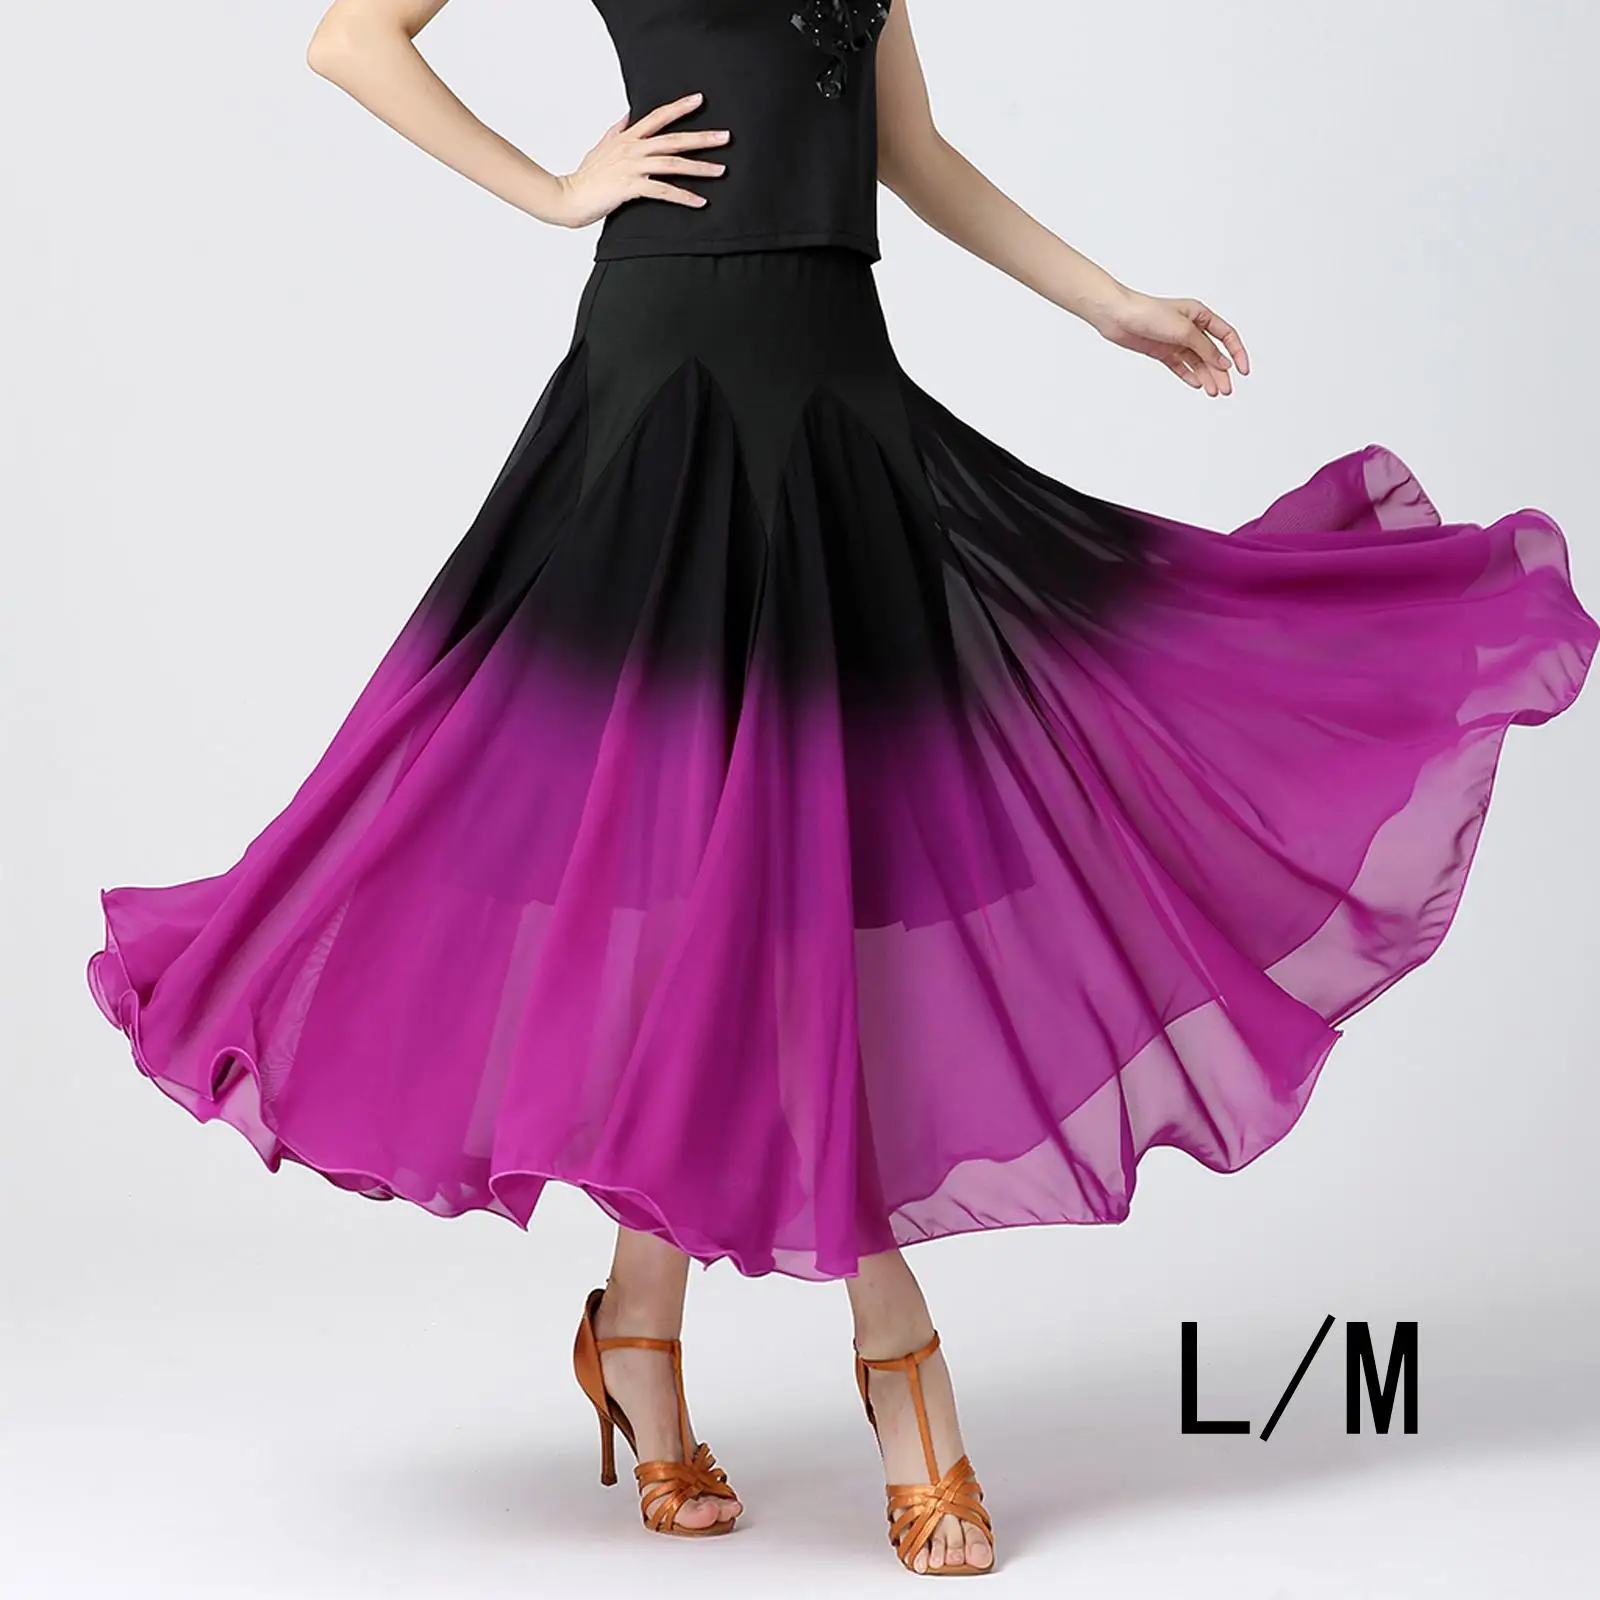 Women`s Ballroom Dance Skirt, Long Swing Skirt Party Dress Fancy Belly Dancing Dress Black Purple Gradient Full Skirt Cosplay